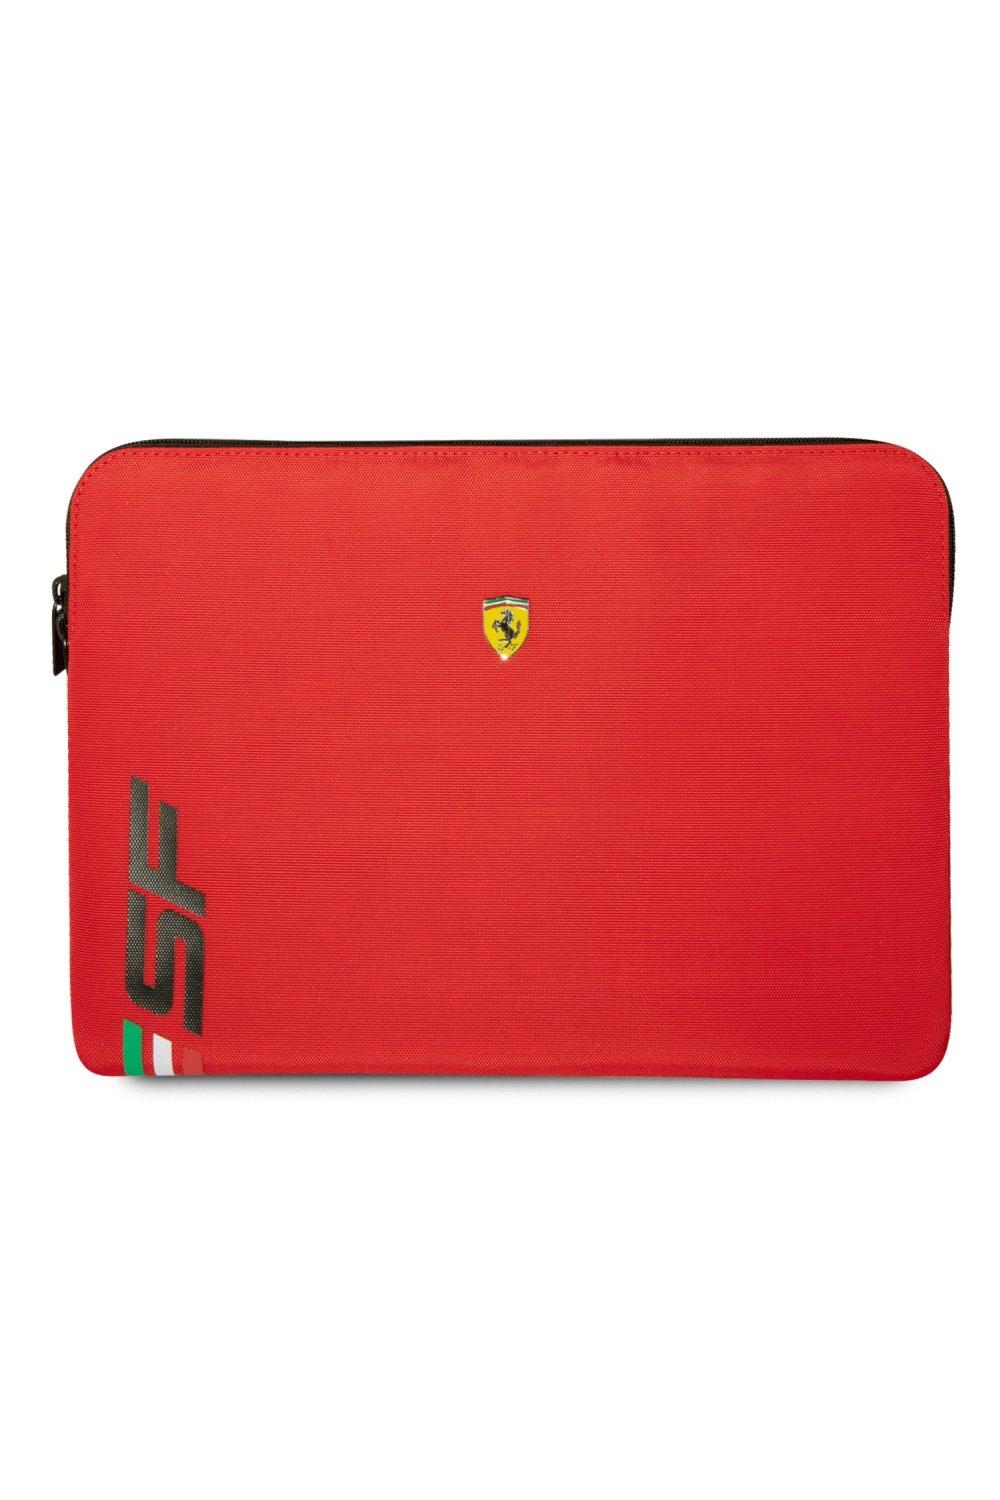 Чехол для ноутбука 14 дюймов из искусственной кожи с логотипом Sf Ferrari, красный скейтборд ferrari 31 x8 цвет чёрный красный